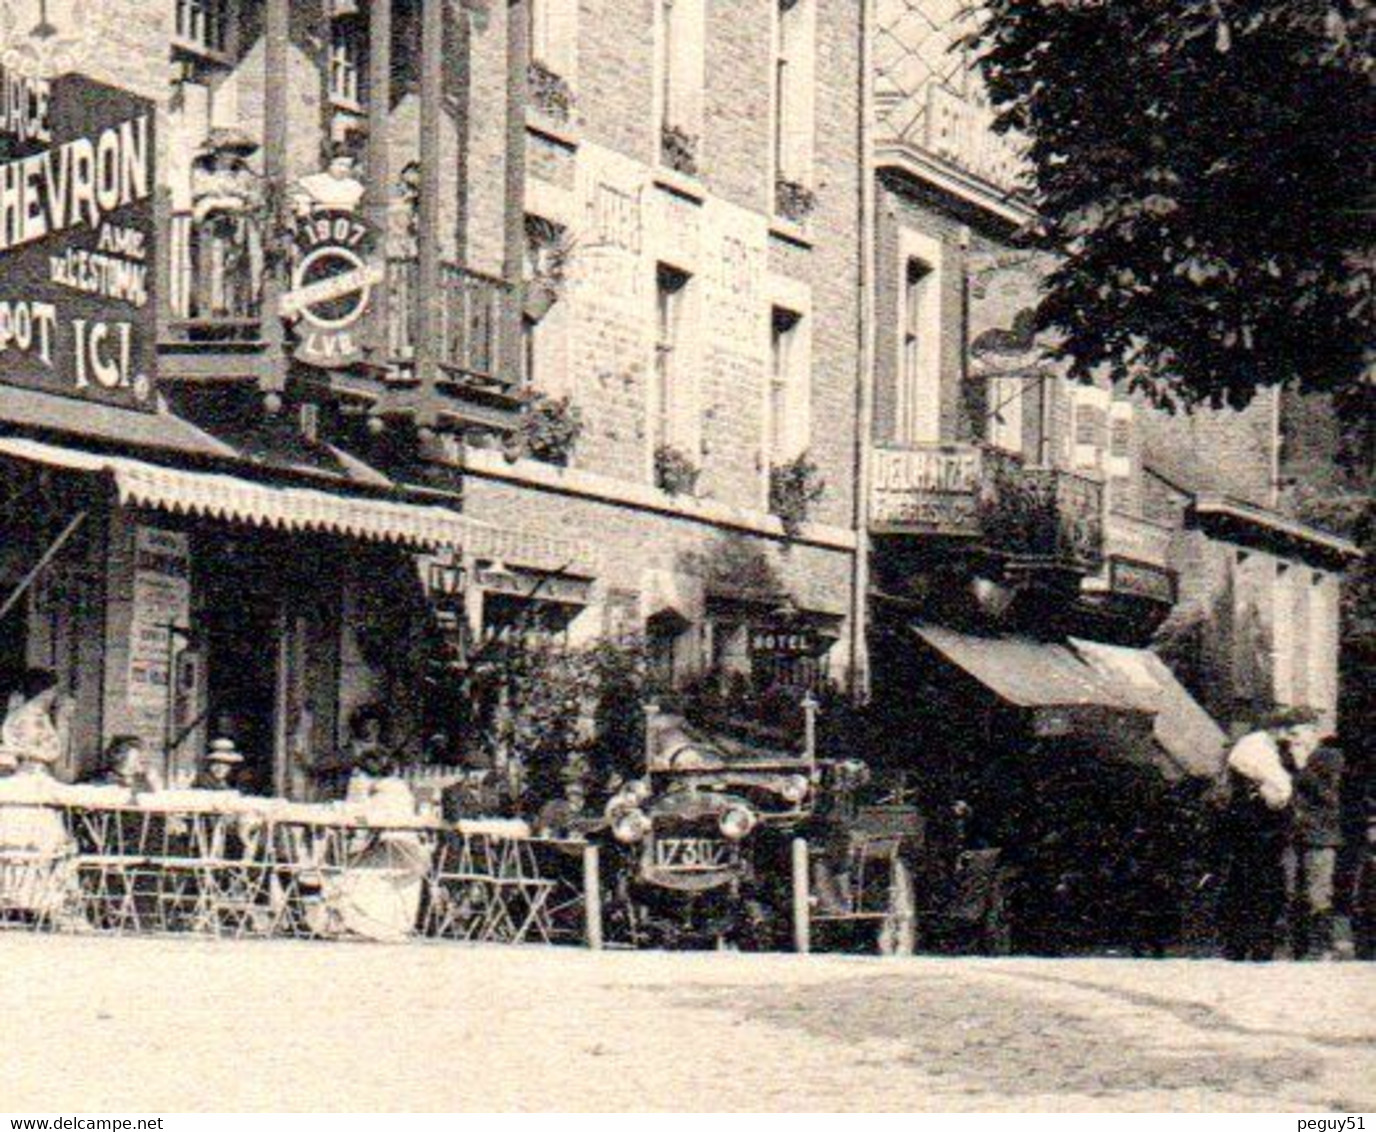 Esneux. Grand Hôtel Du Pont. Imprimerie Ley-Nicolay. Entrée Du Restaurant. Au Bon Marché Frères Delhaize. 1914 - Esneux